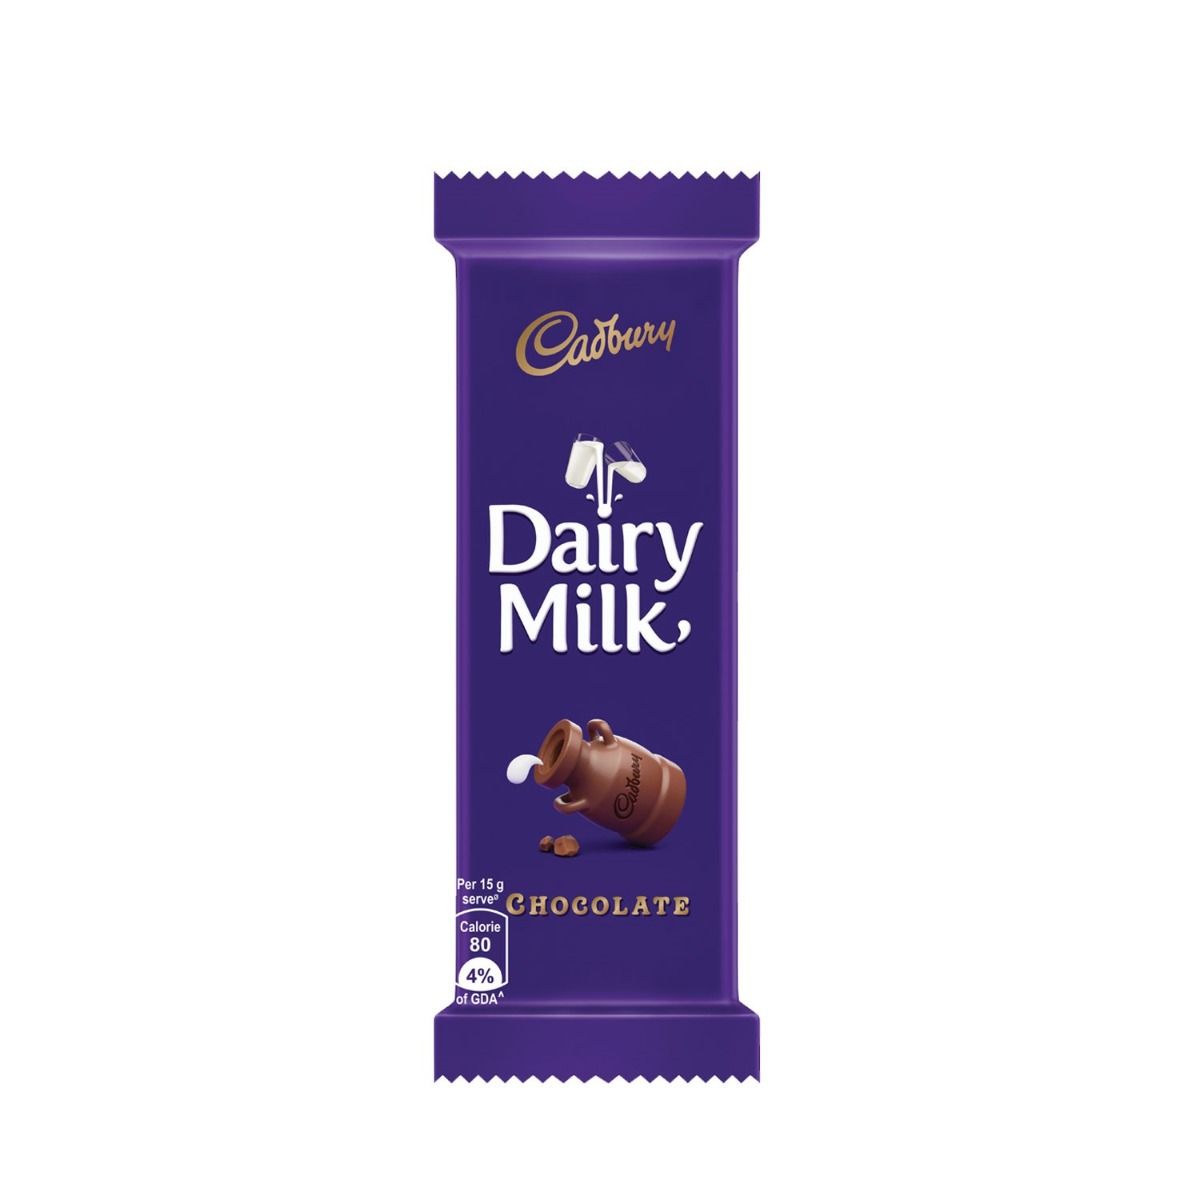 Cadbury Dairy Milk Chocolate Bar, 24 gm, Pack of 1 